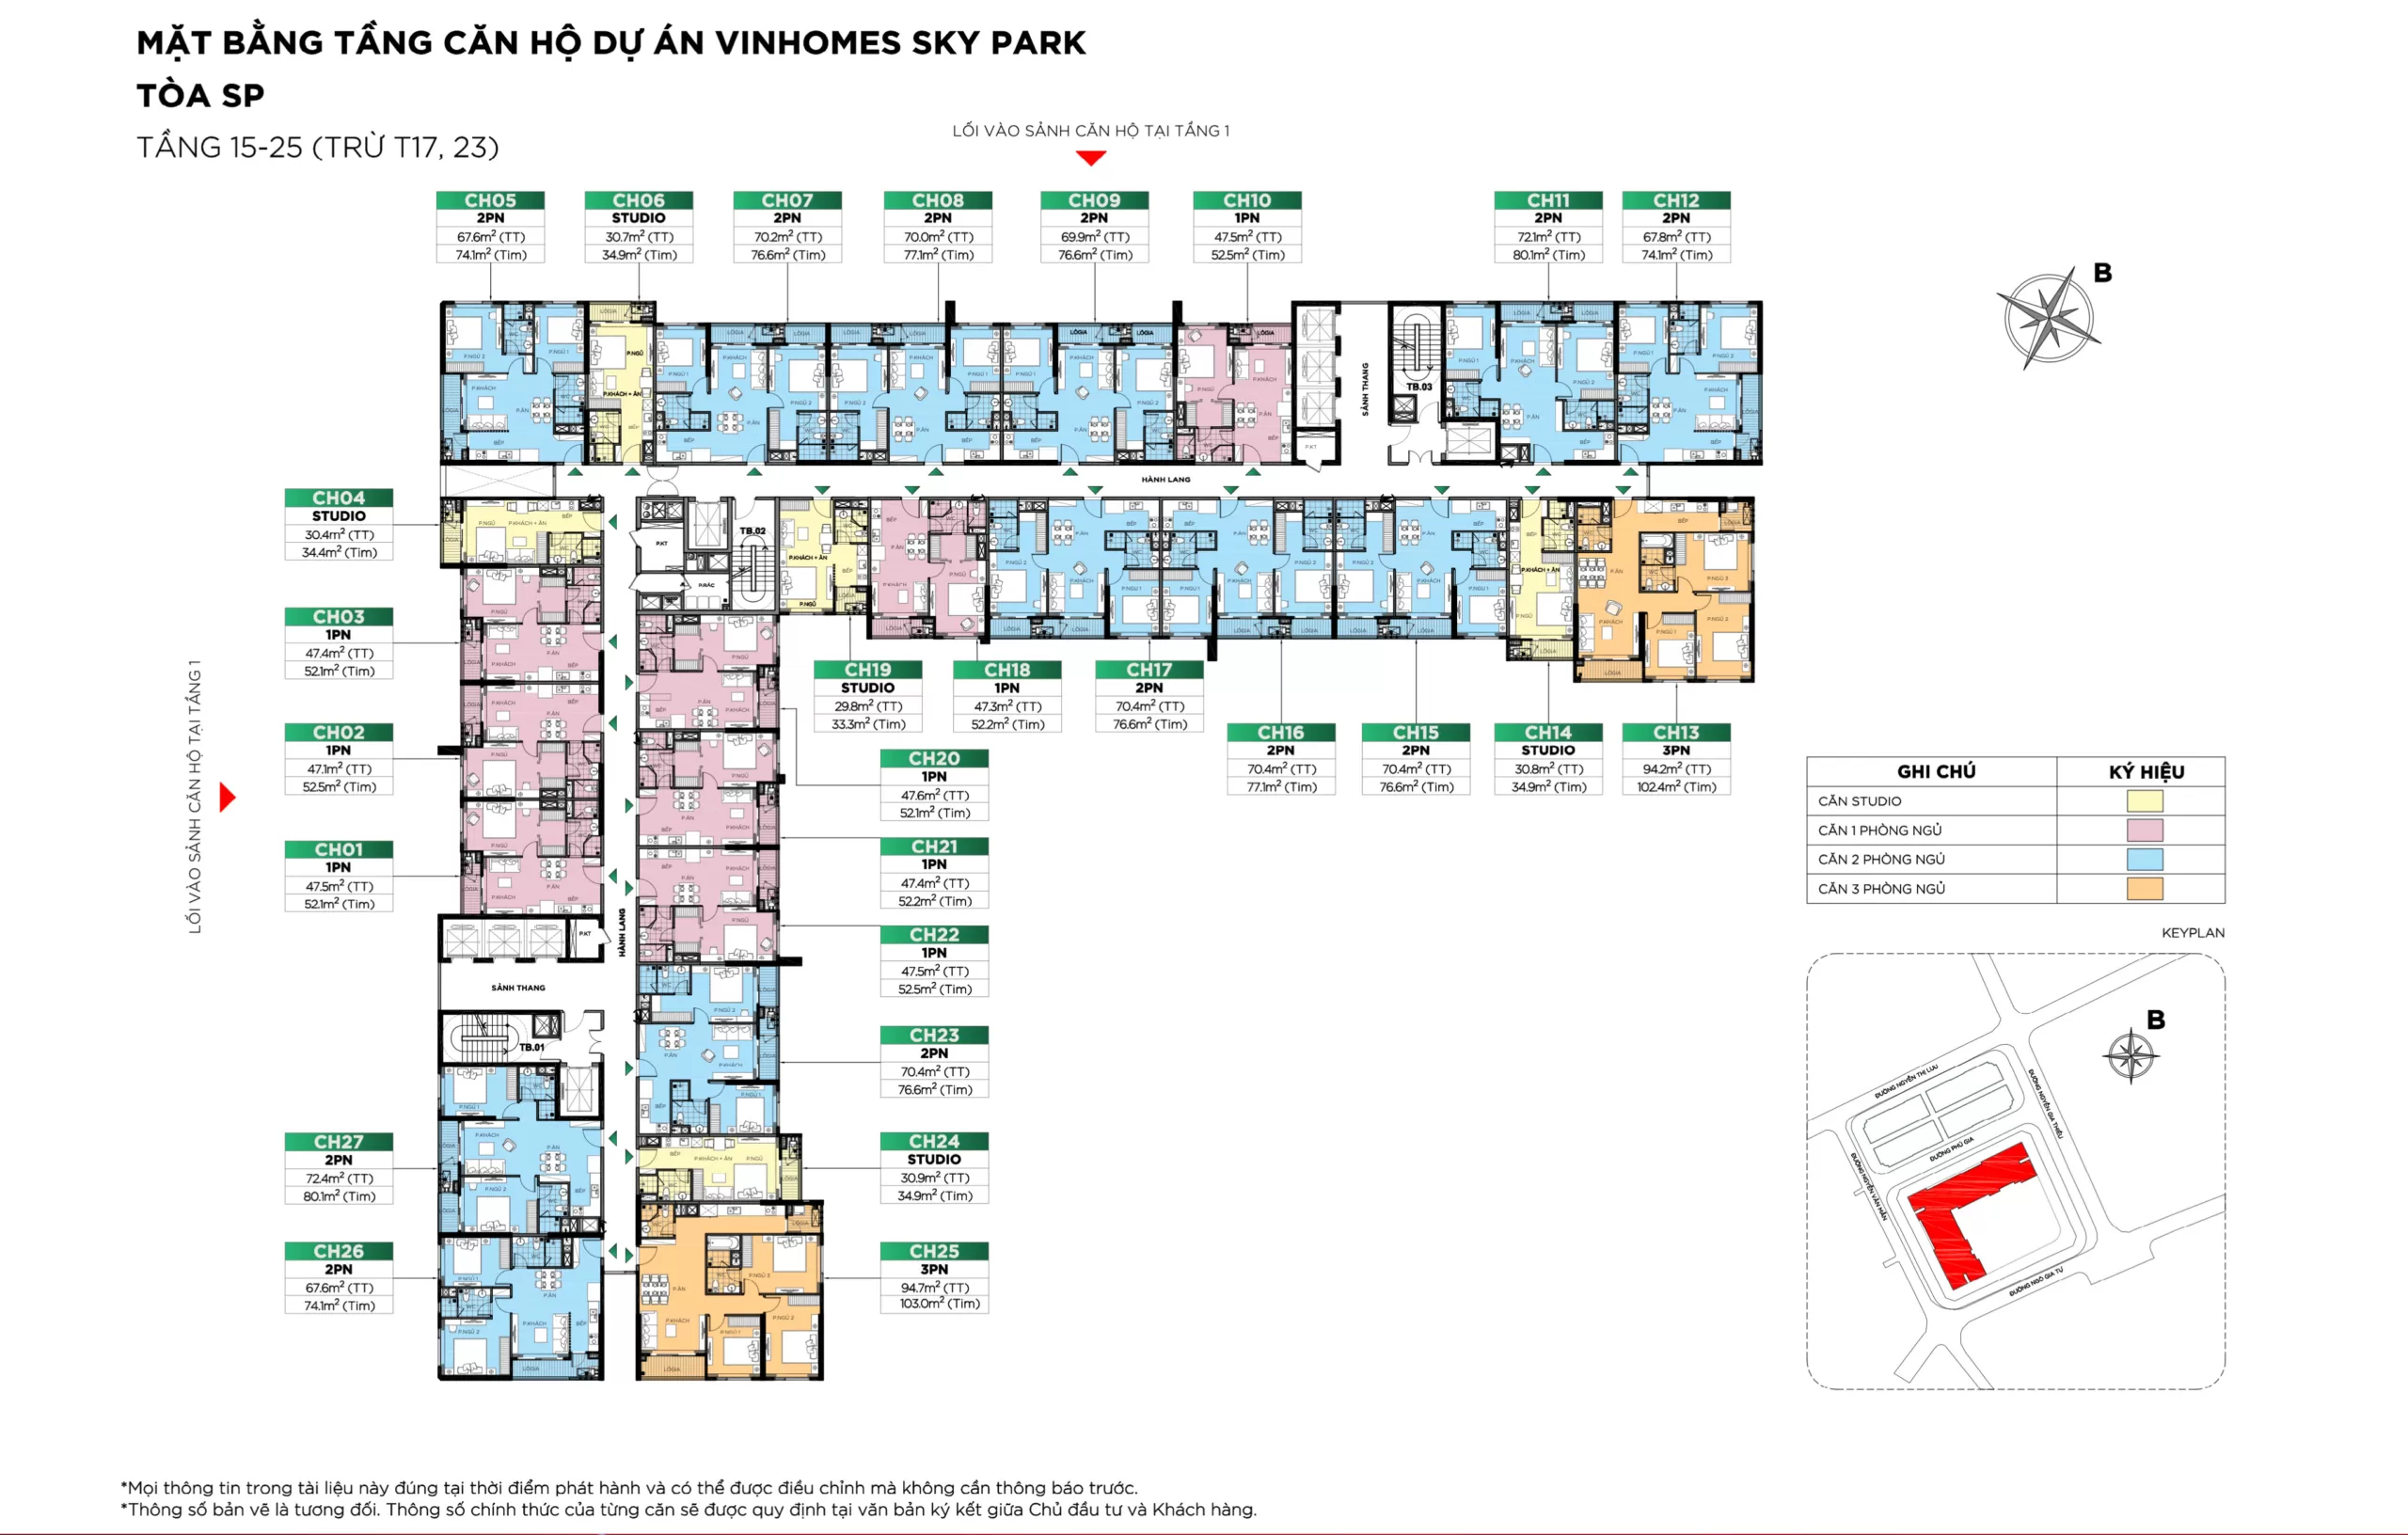 floor plan of vinhomes bac giang sky park